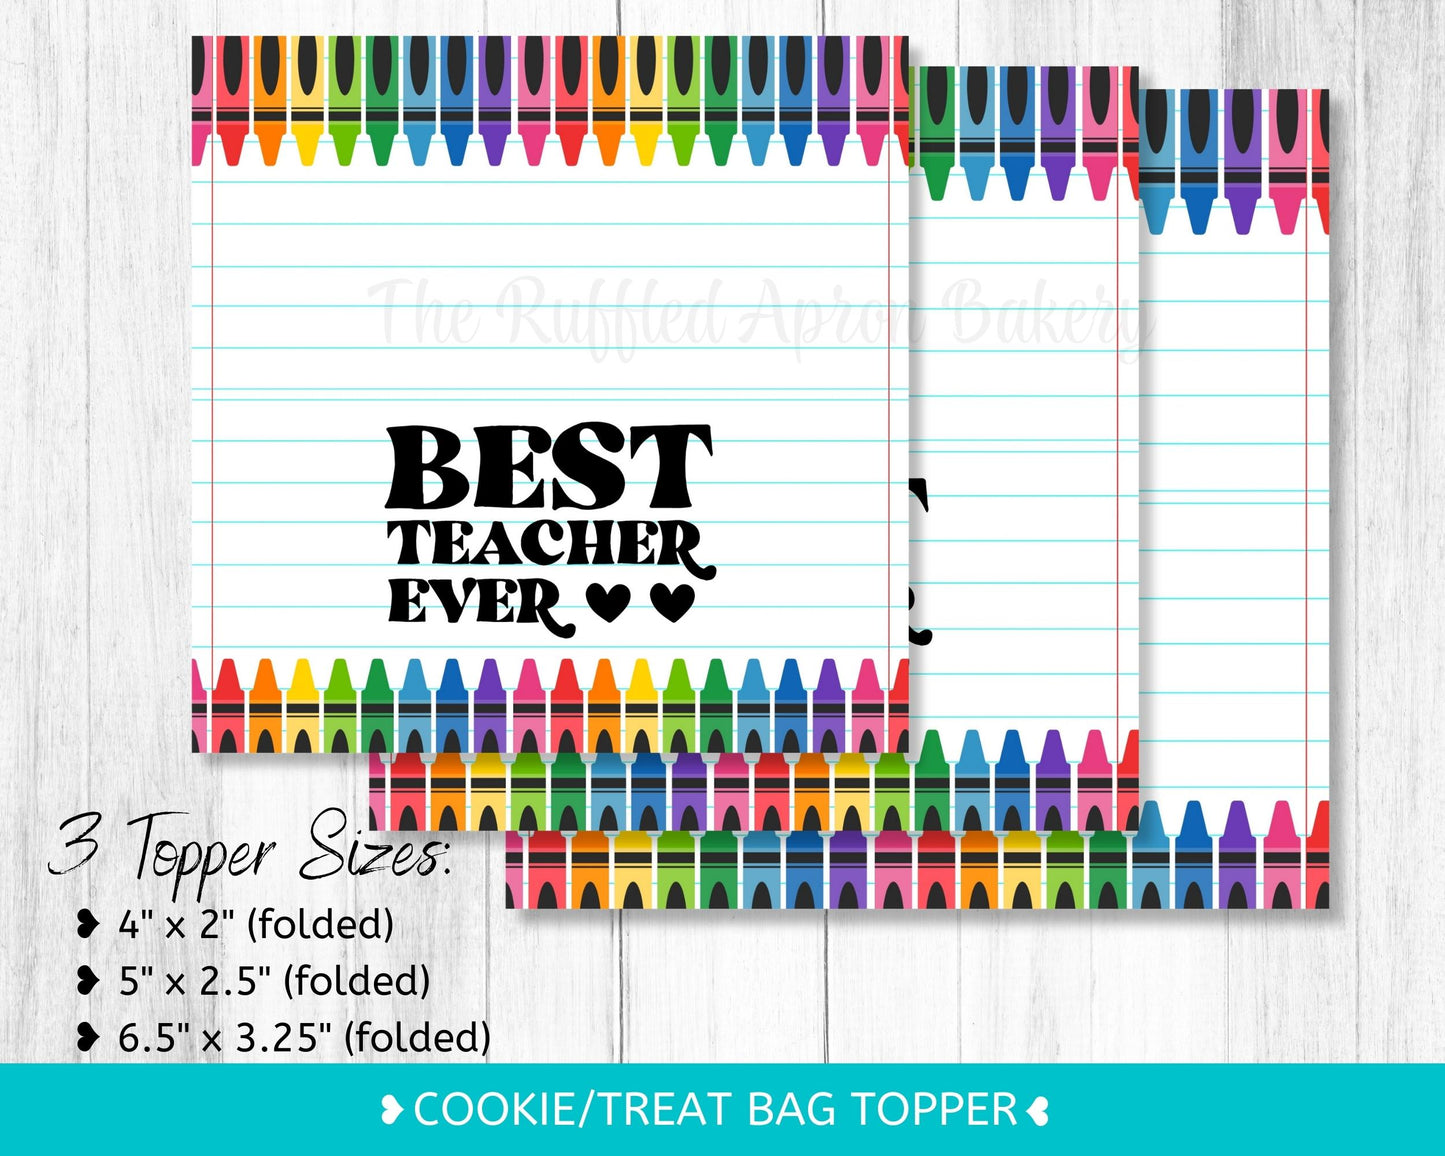 Best Teacher Ever Cookie Bag Topper